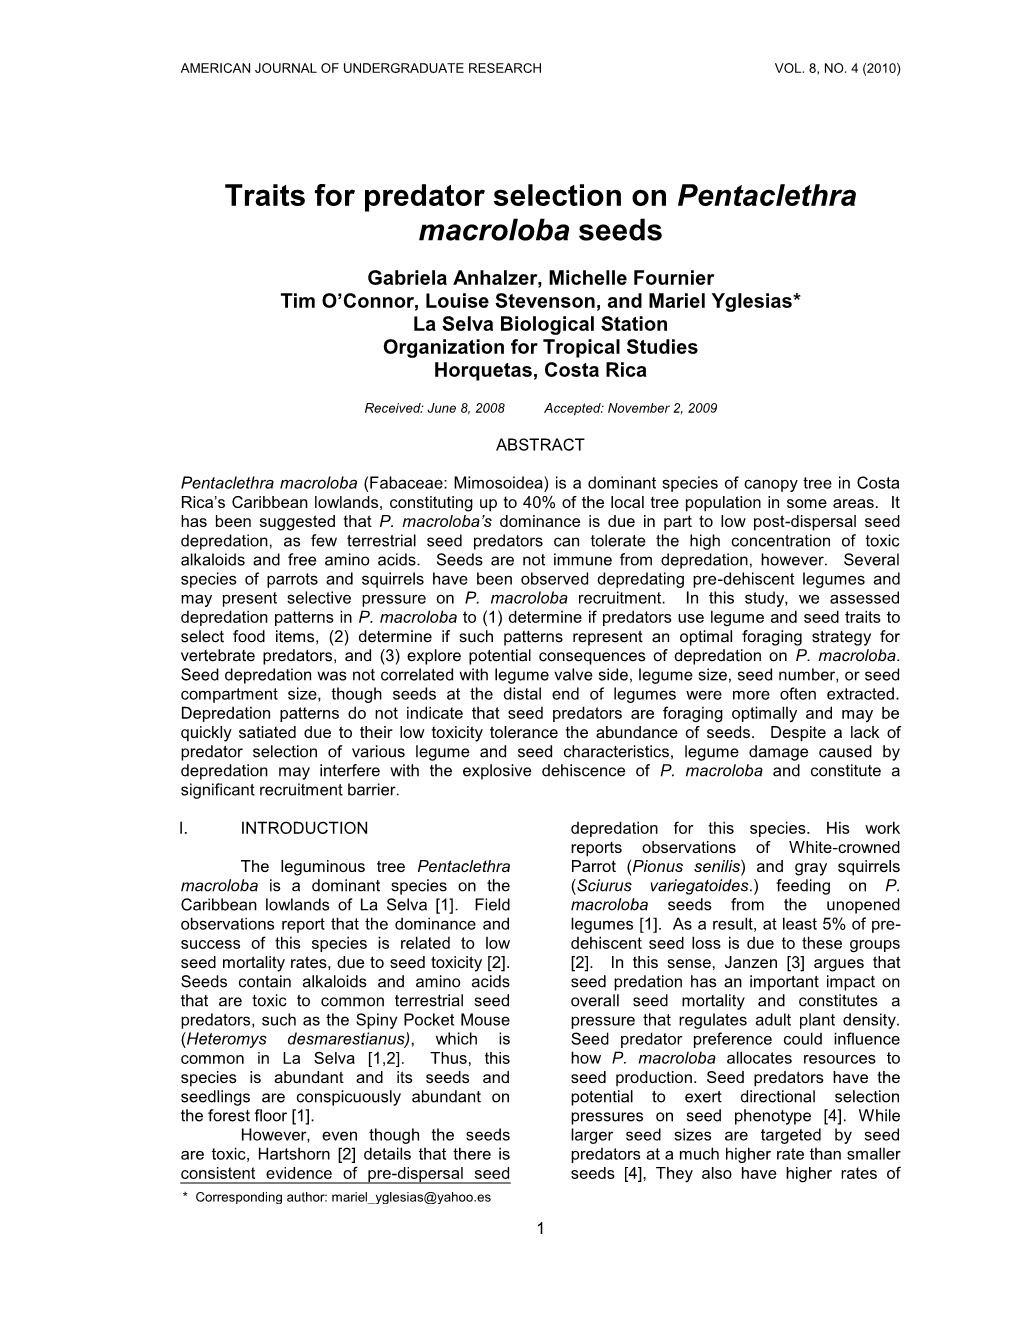 Traits for Predator Selection on Pentaclethra Macroloba Seeds